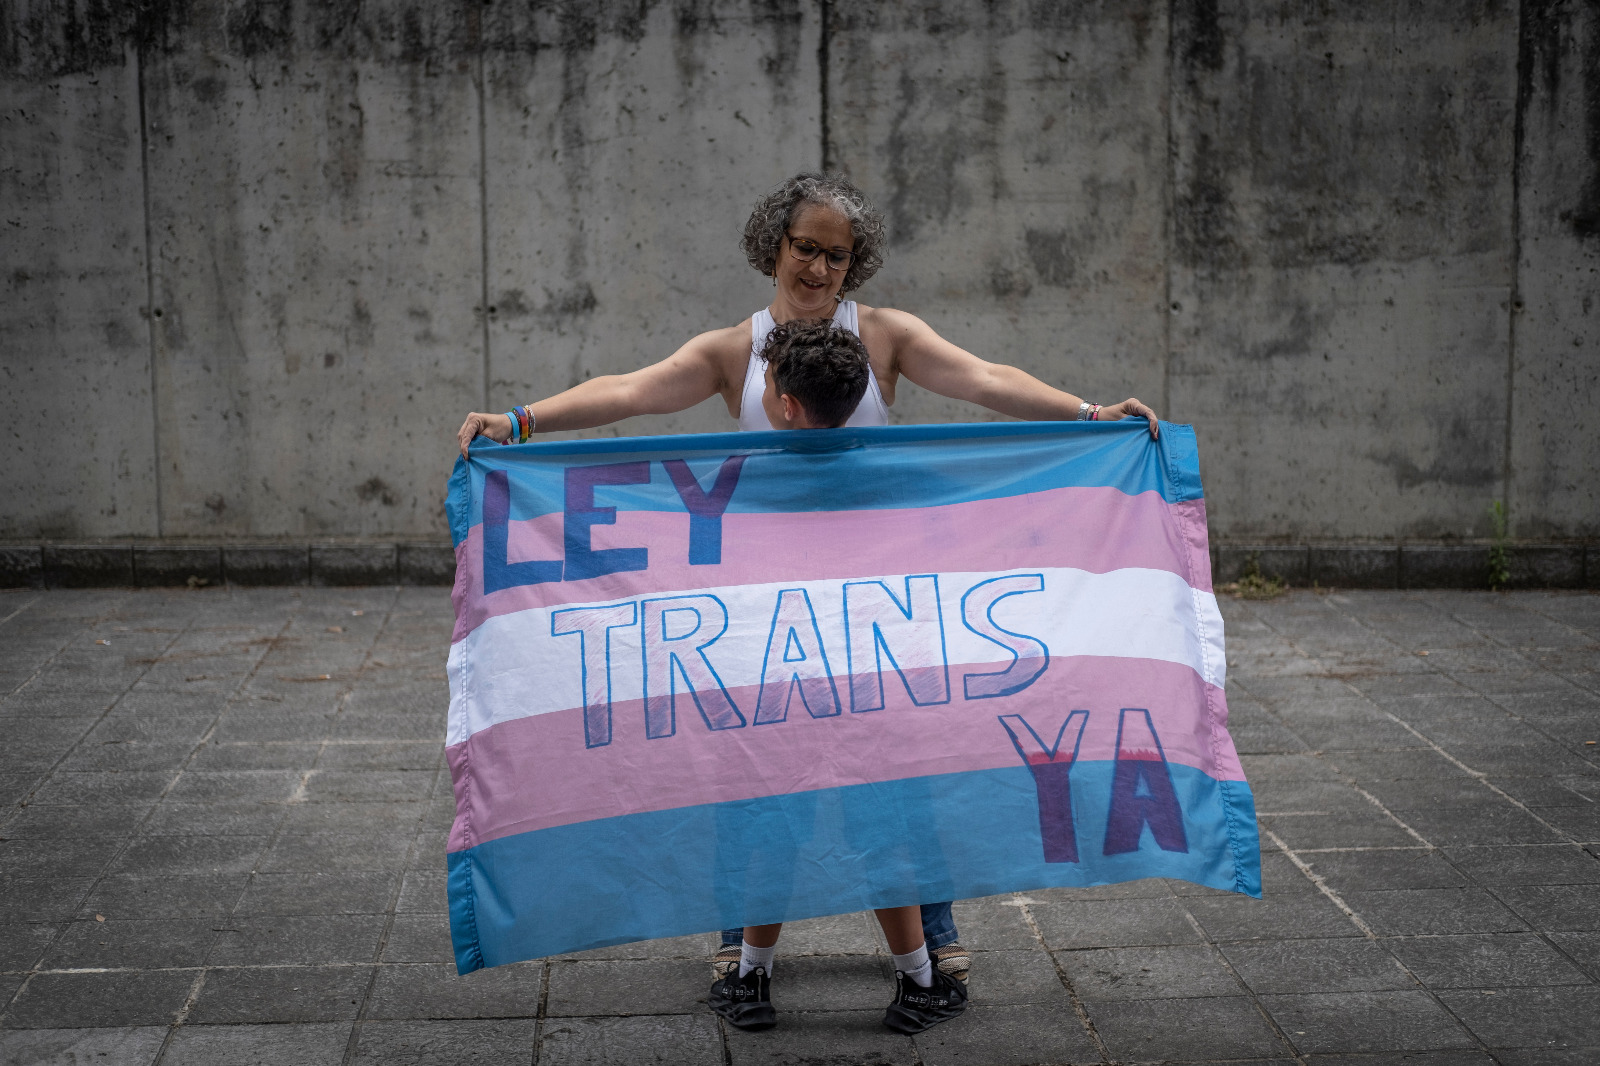 La madre del niño 'trans' de ocho años de Orense: "Se debe despatologizar la identidad, no es una enfermedad mental" thumbnail